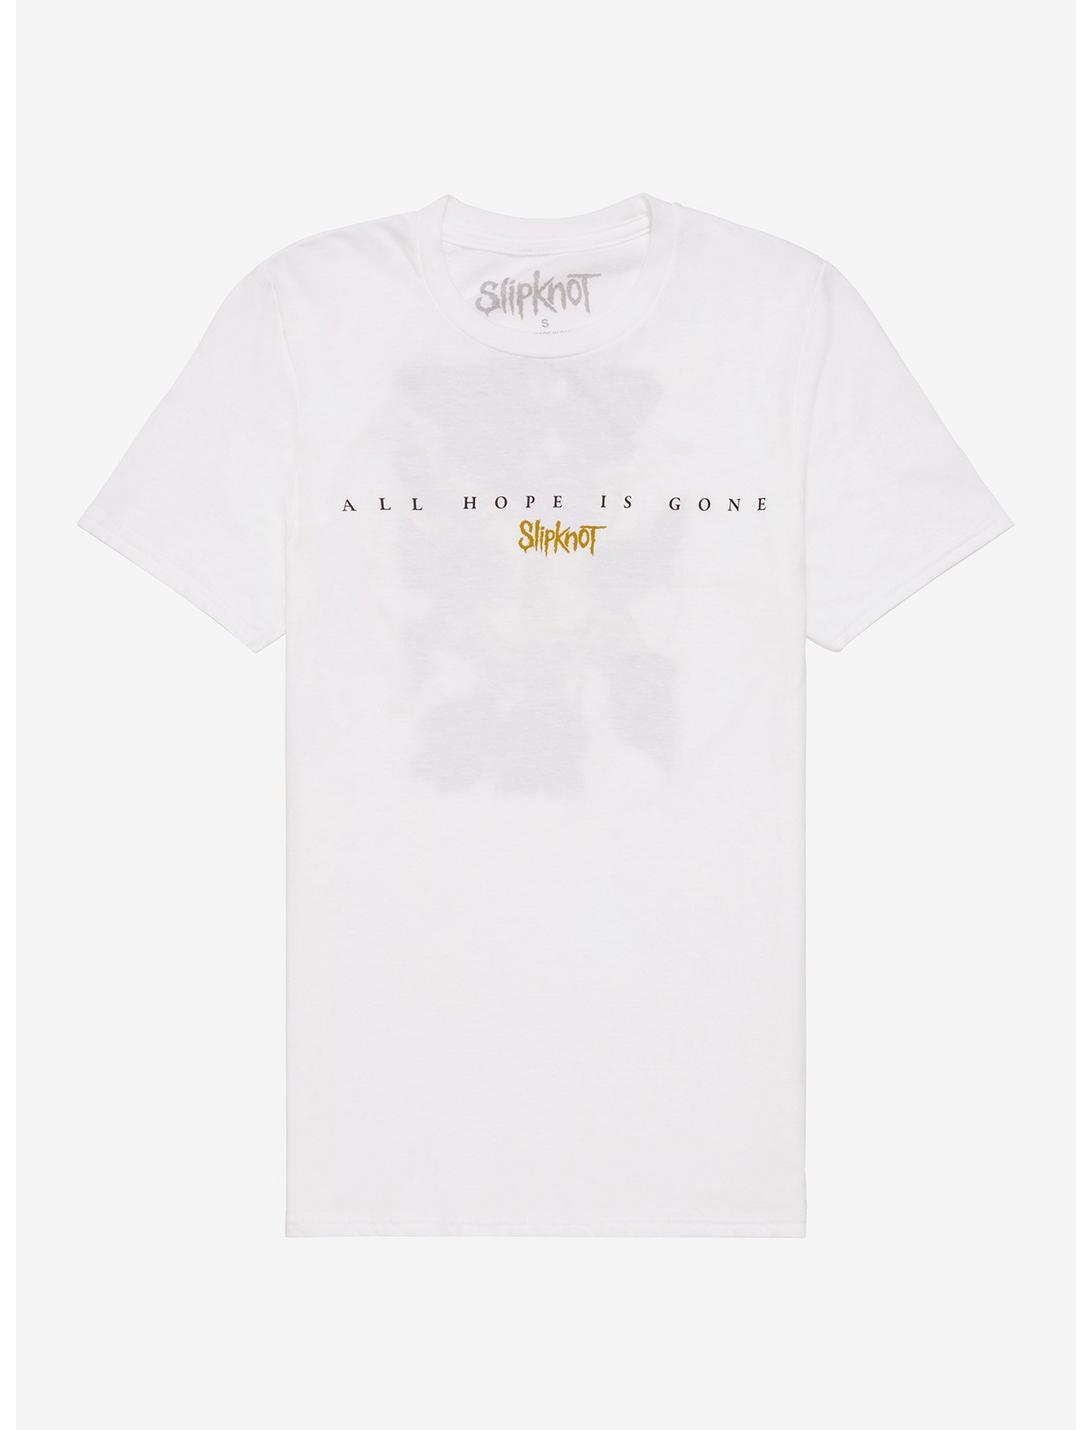 Slipknot Hope Is Gone Boyfriend Fit Girls T-Shirt, WHITE, hi-res